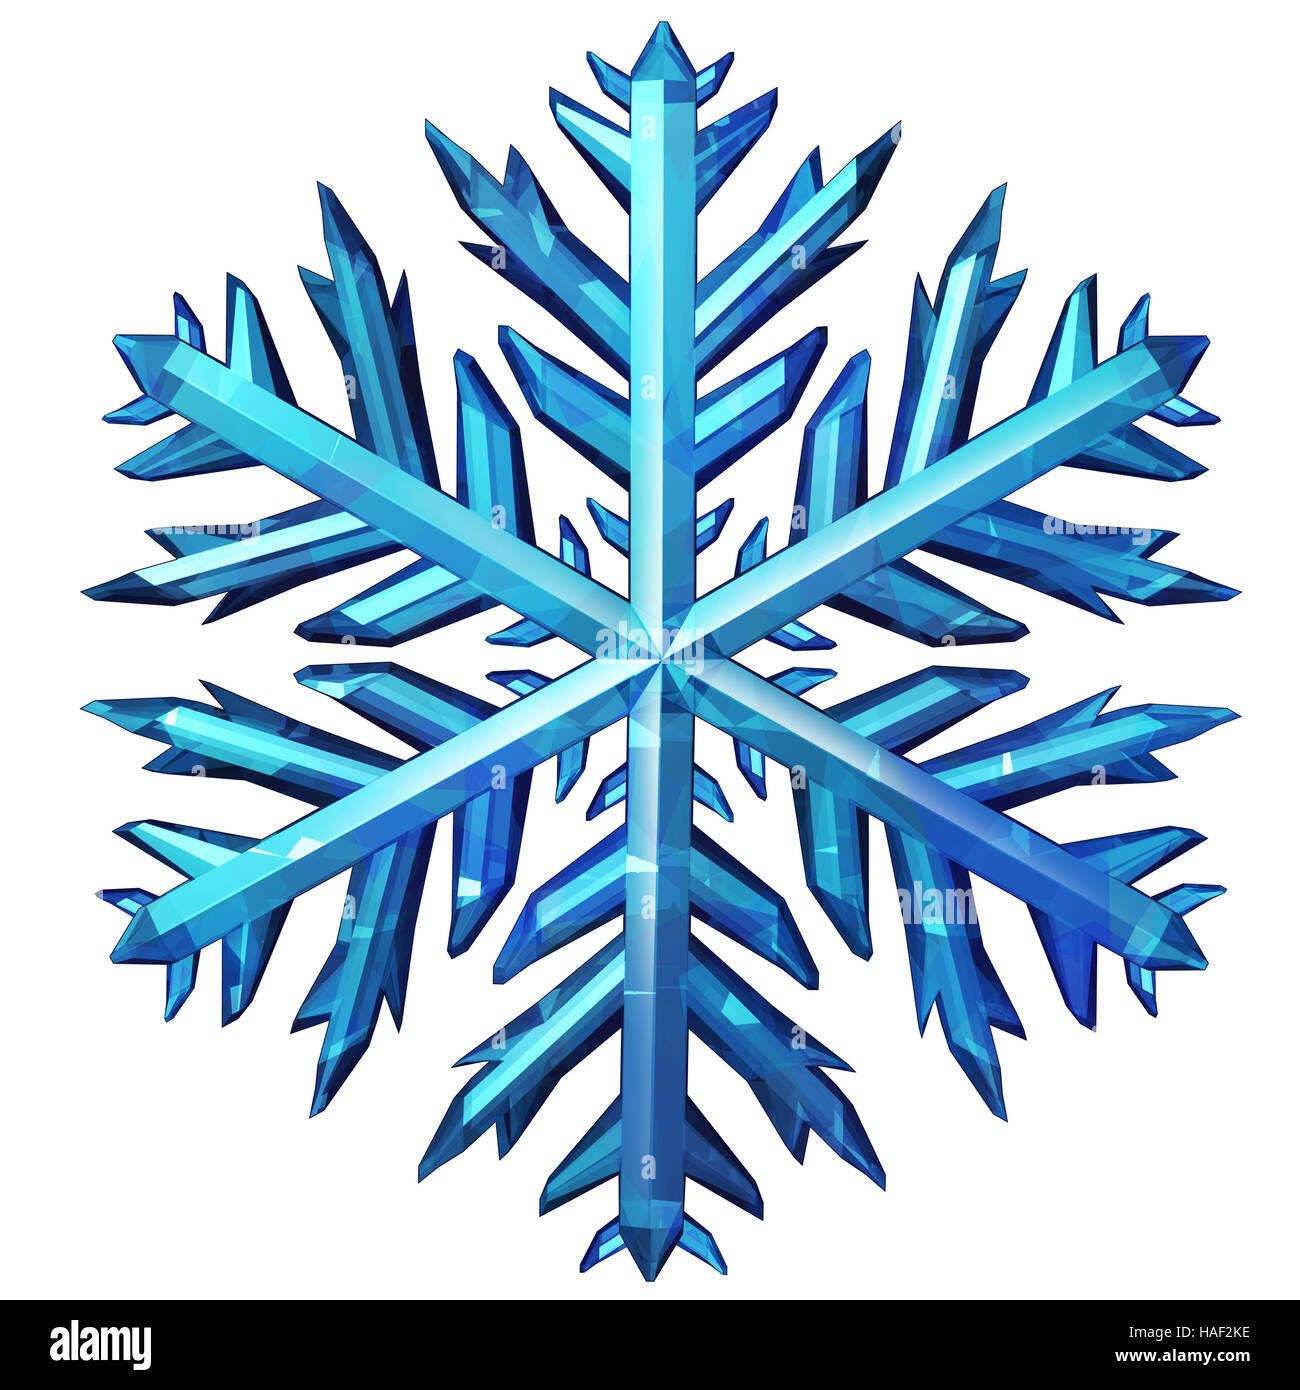 L'icona del fiocco di neve isolato su uno sfondo bianco come una stagione invernale o festosa freddo simbolo come un elemento grafico come un ornamento o decorazione per Foto Stock